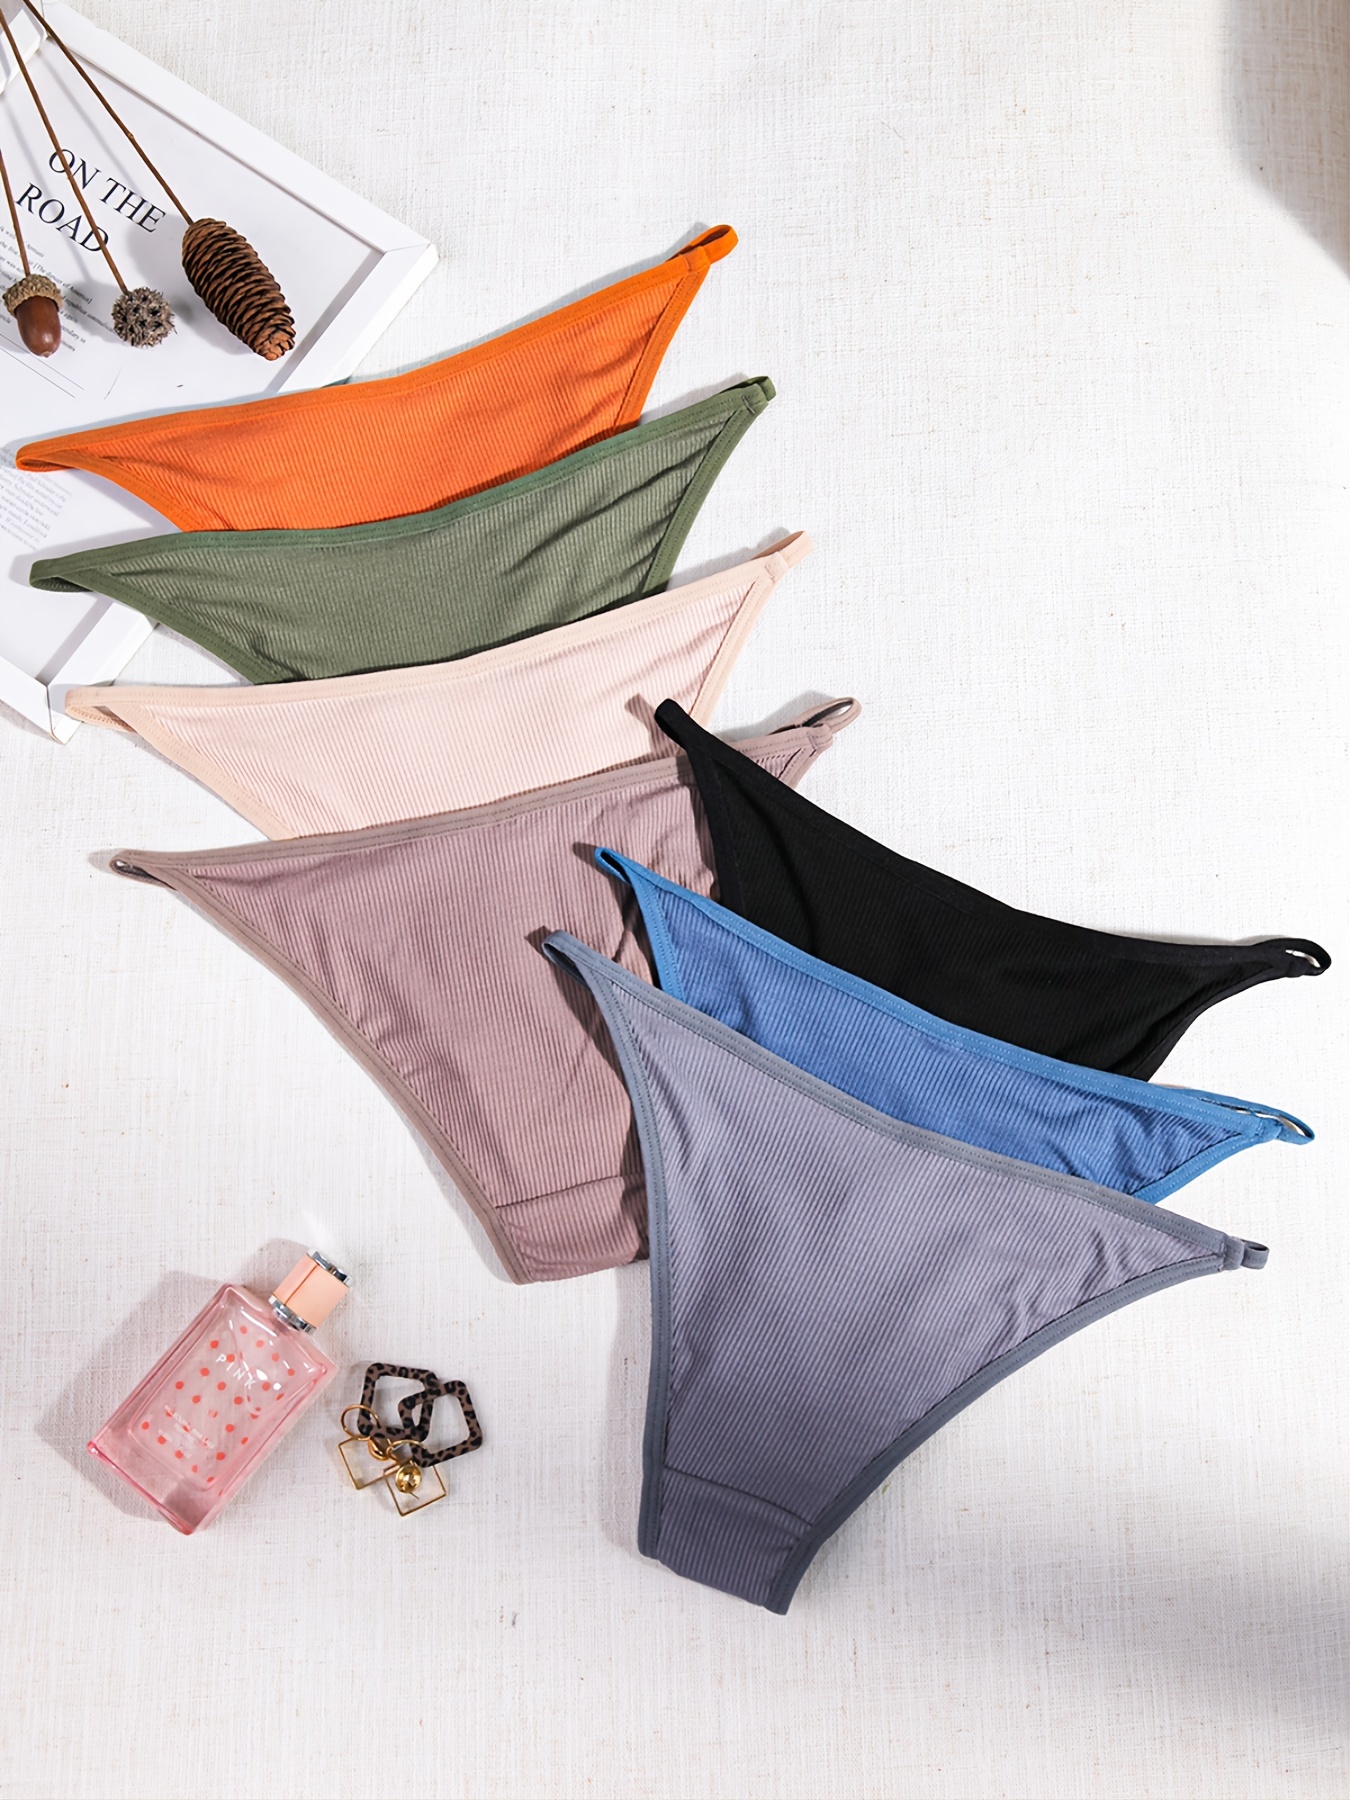 m-xxl women's underpants soft cotton panties